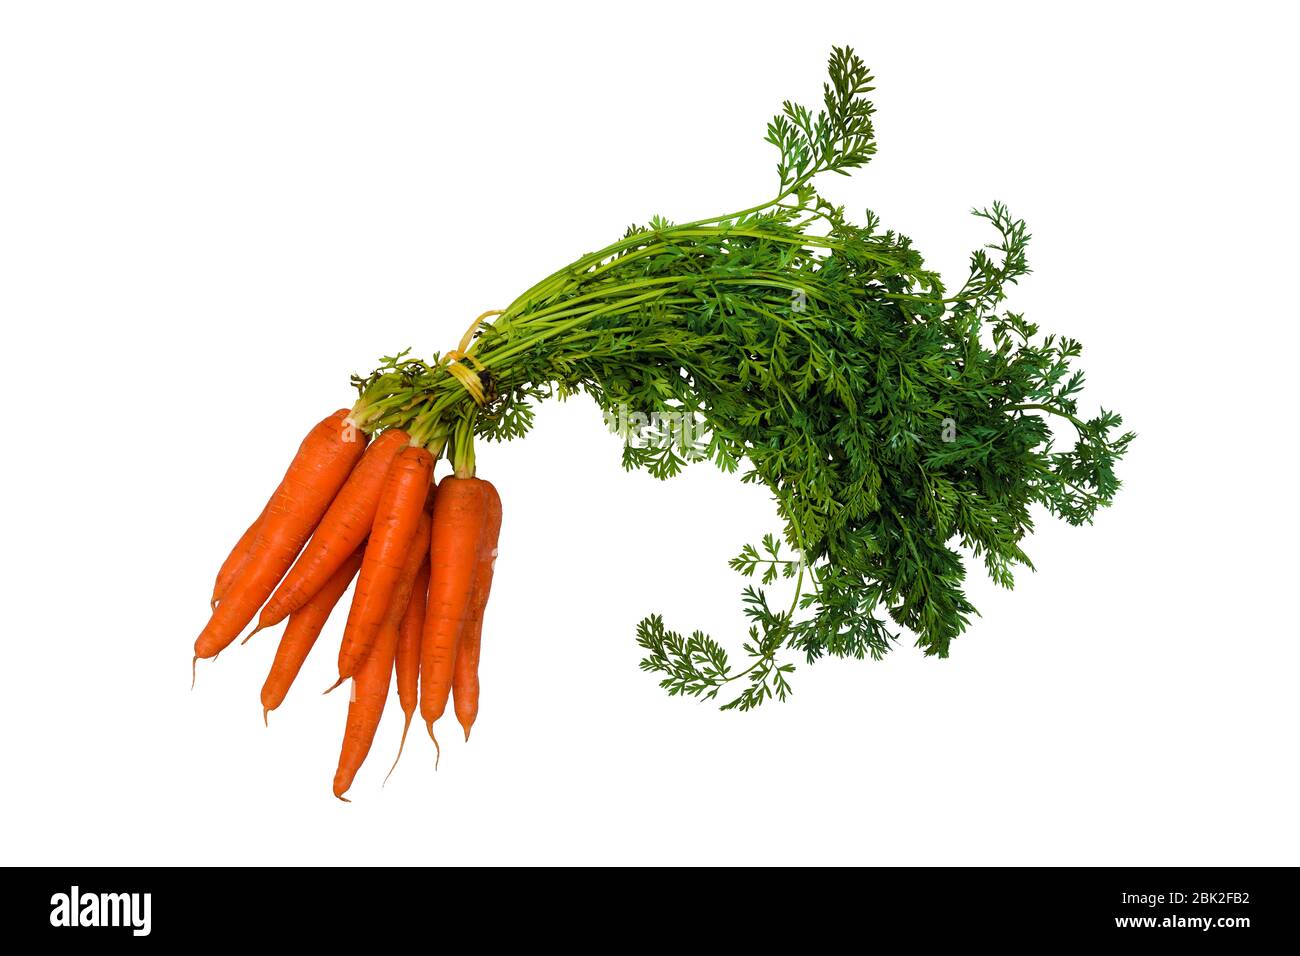 Bund von orange und grün rohen Karotten auf weißem Hintergrund Stockfoto